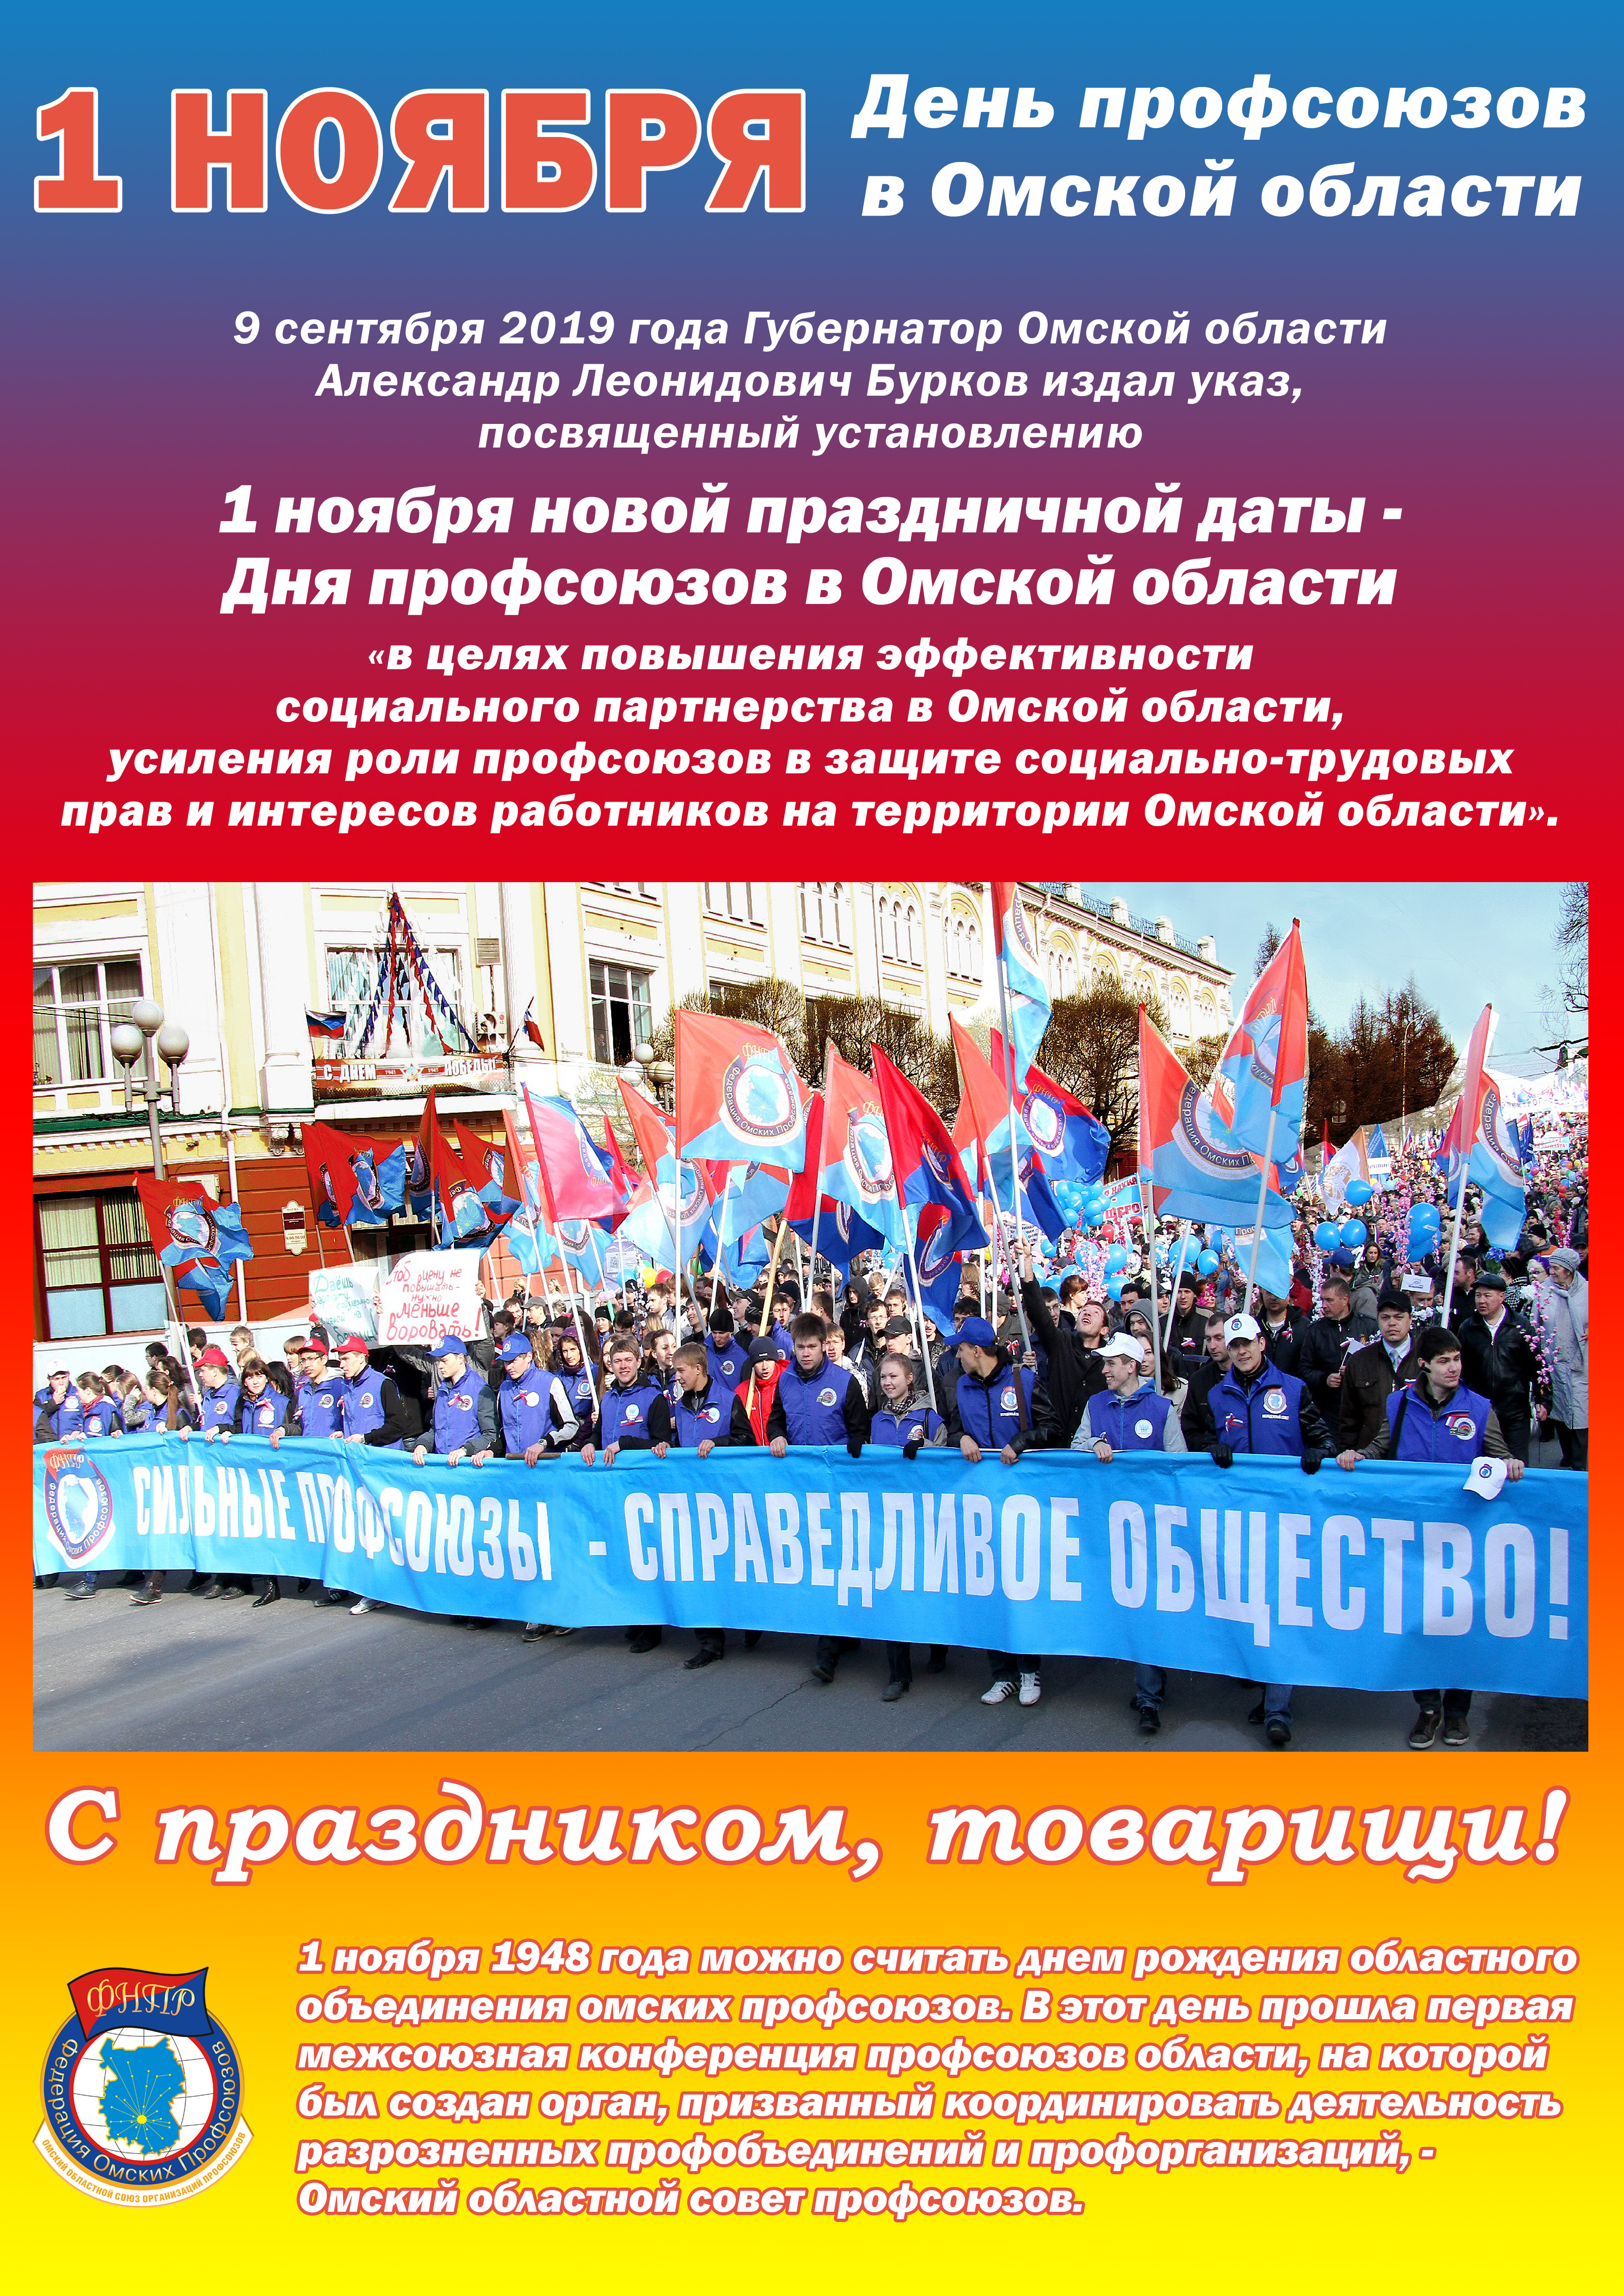 1 Ноября день профсоюзов в Омской области